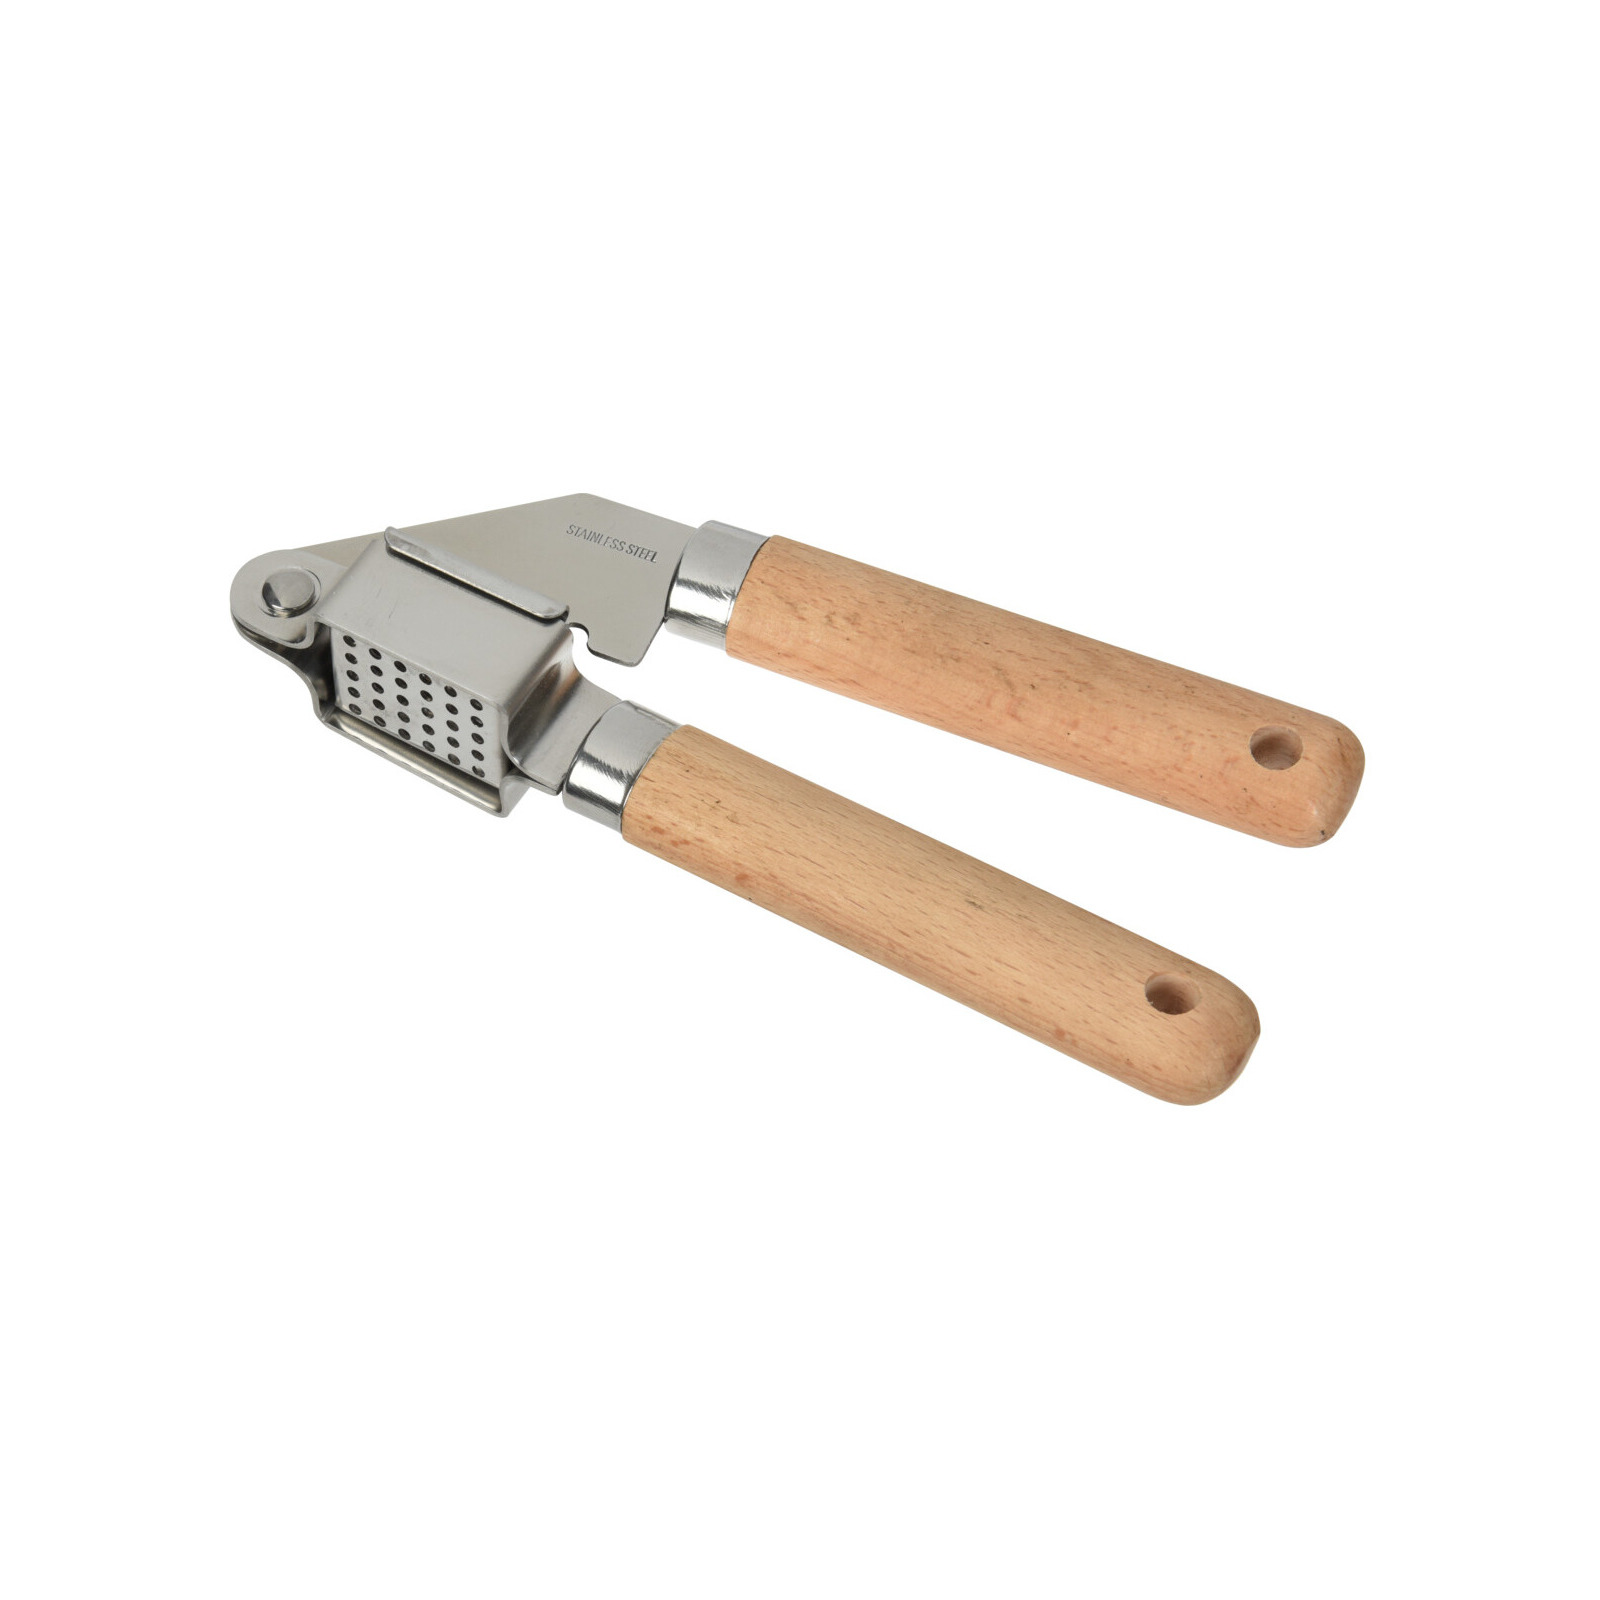 Excellent Houseware Keukengerei knoflookpers RVS steel en houten handvat 16.5 cm -